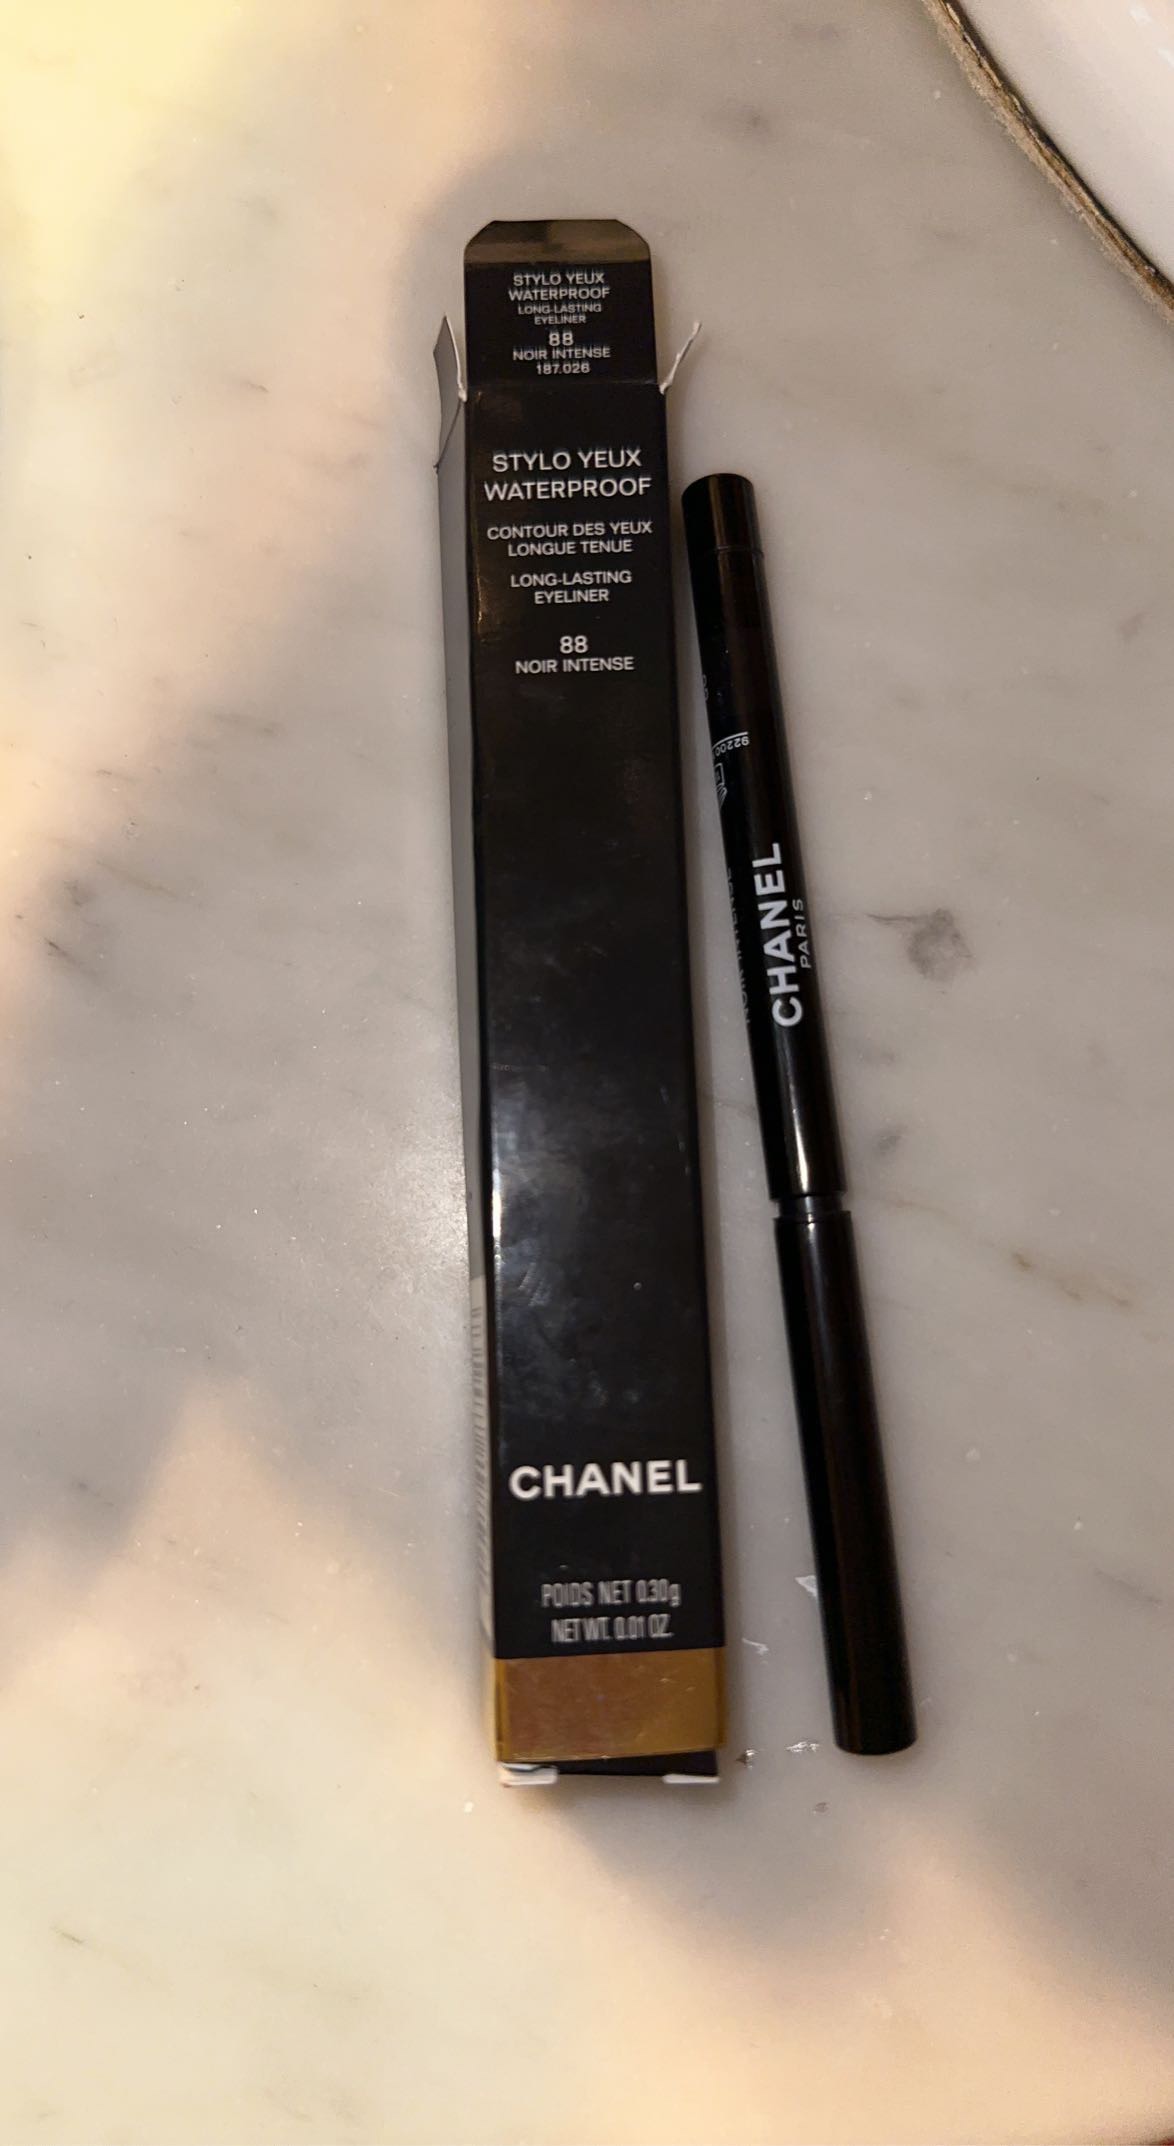 Chanel Yeux Waterproof CHANEL Stylo Yeux Waterproof Oogcontourpotlood Voor Een Langdurig Resultaat | Chanel Fijne eyeliner - We Are Eves: eerlijke cosmetica reviews.